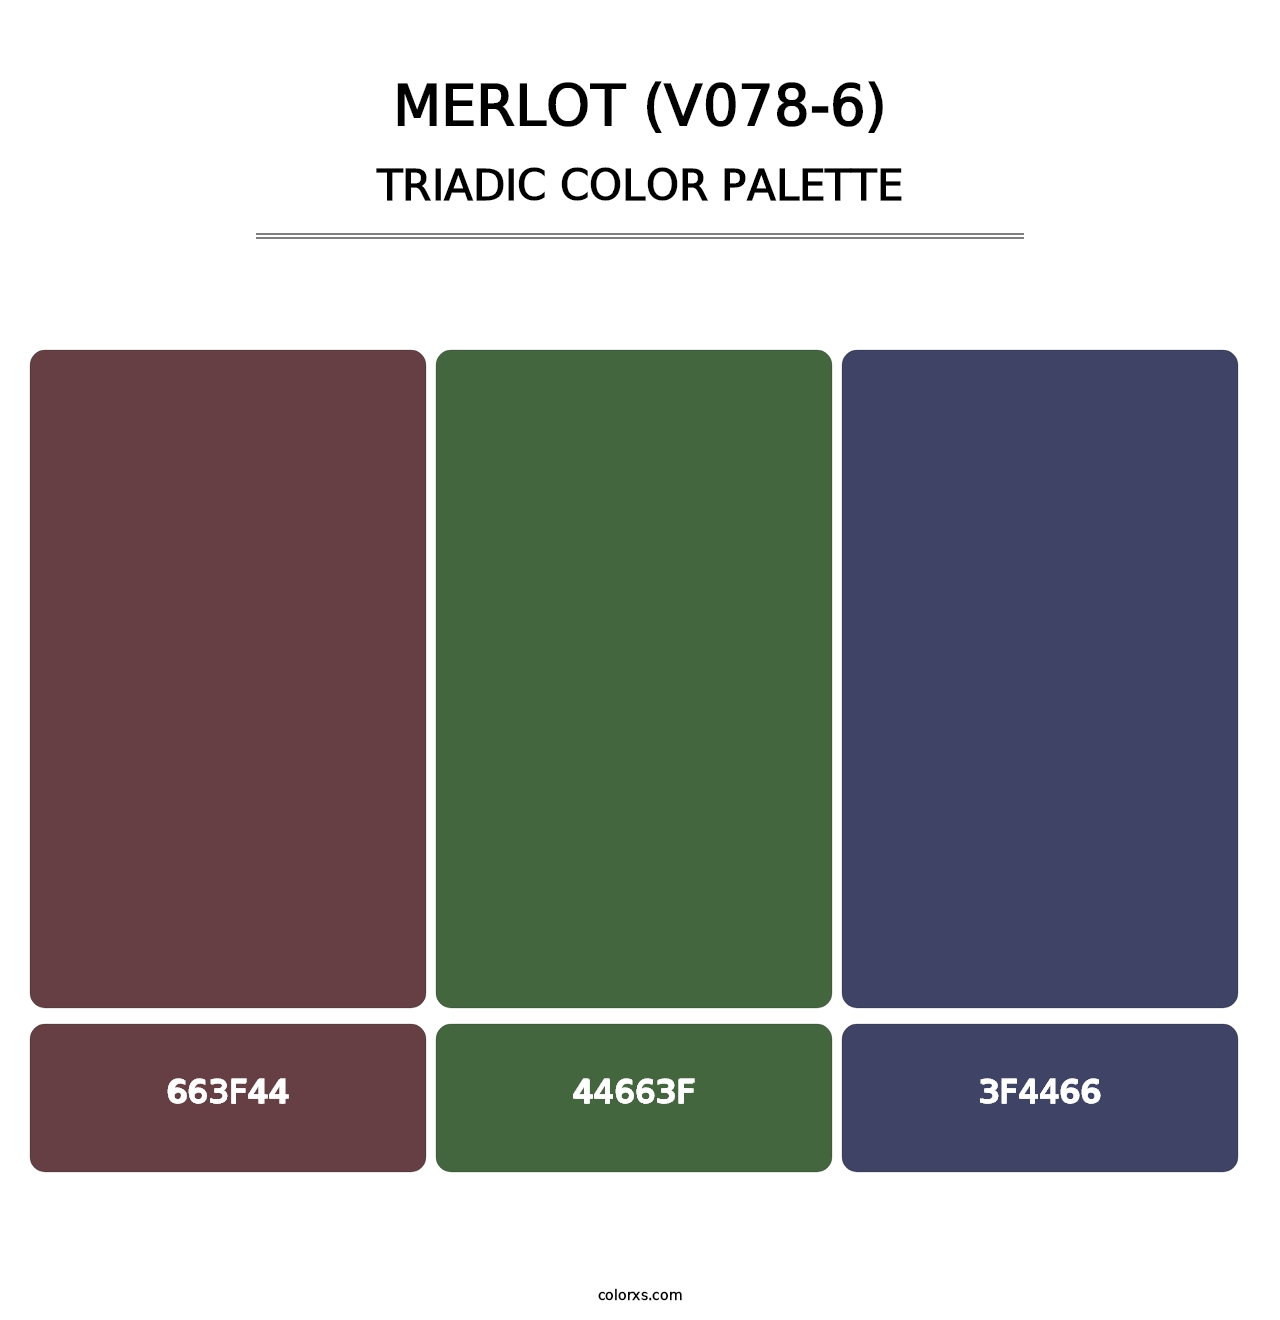 Merlot (V078-6) - Triadic Color Palette